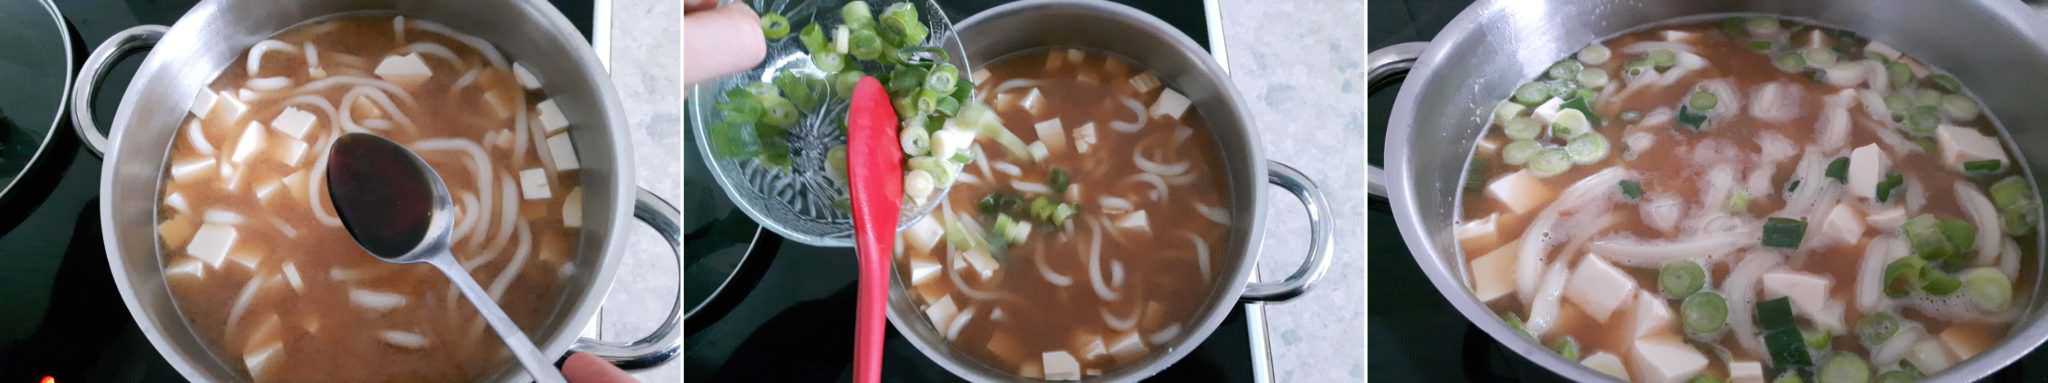 Miso Udon Schritt 6 Suppe würzen und garnieren